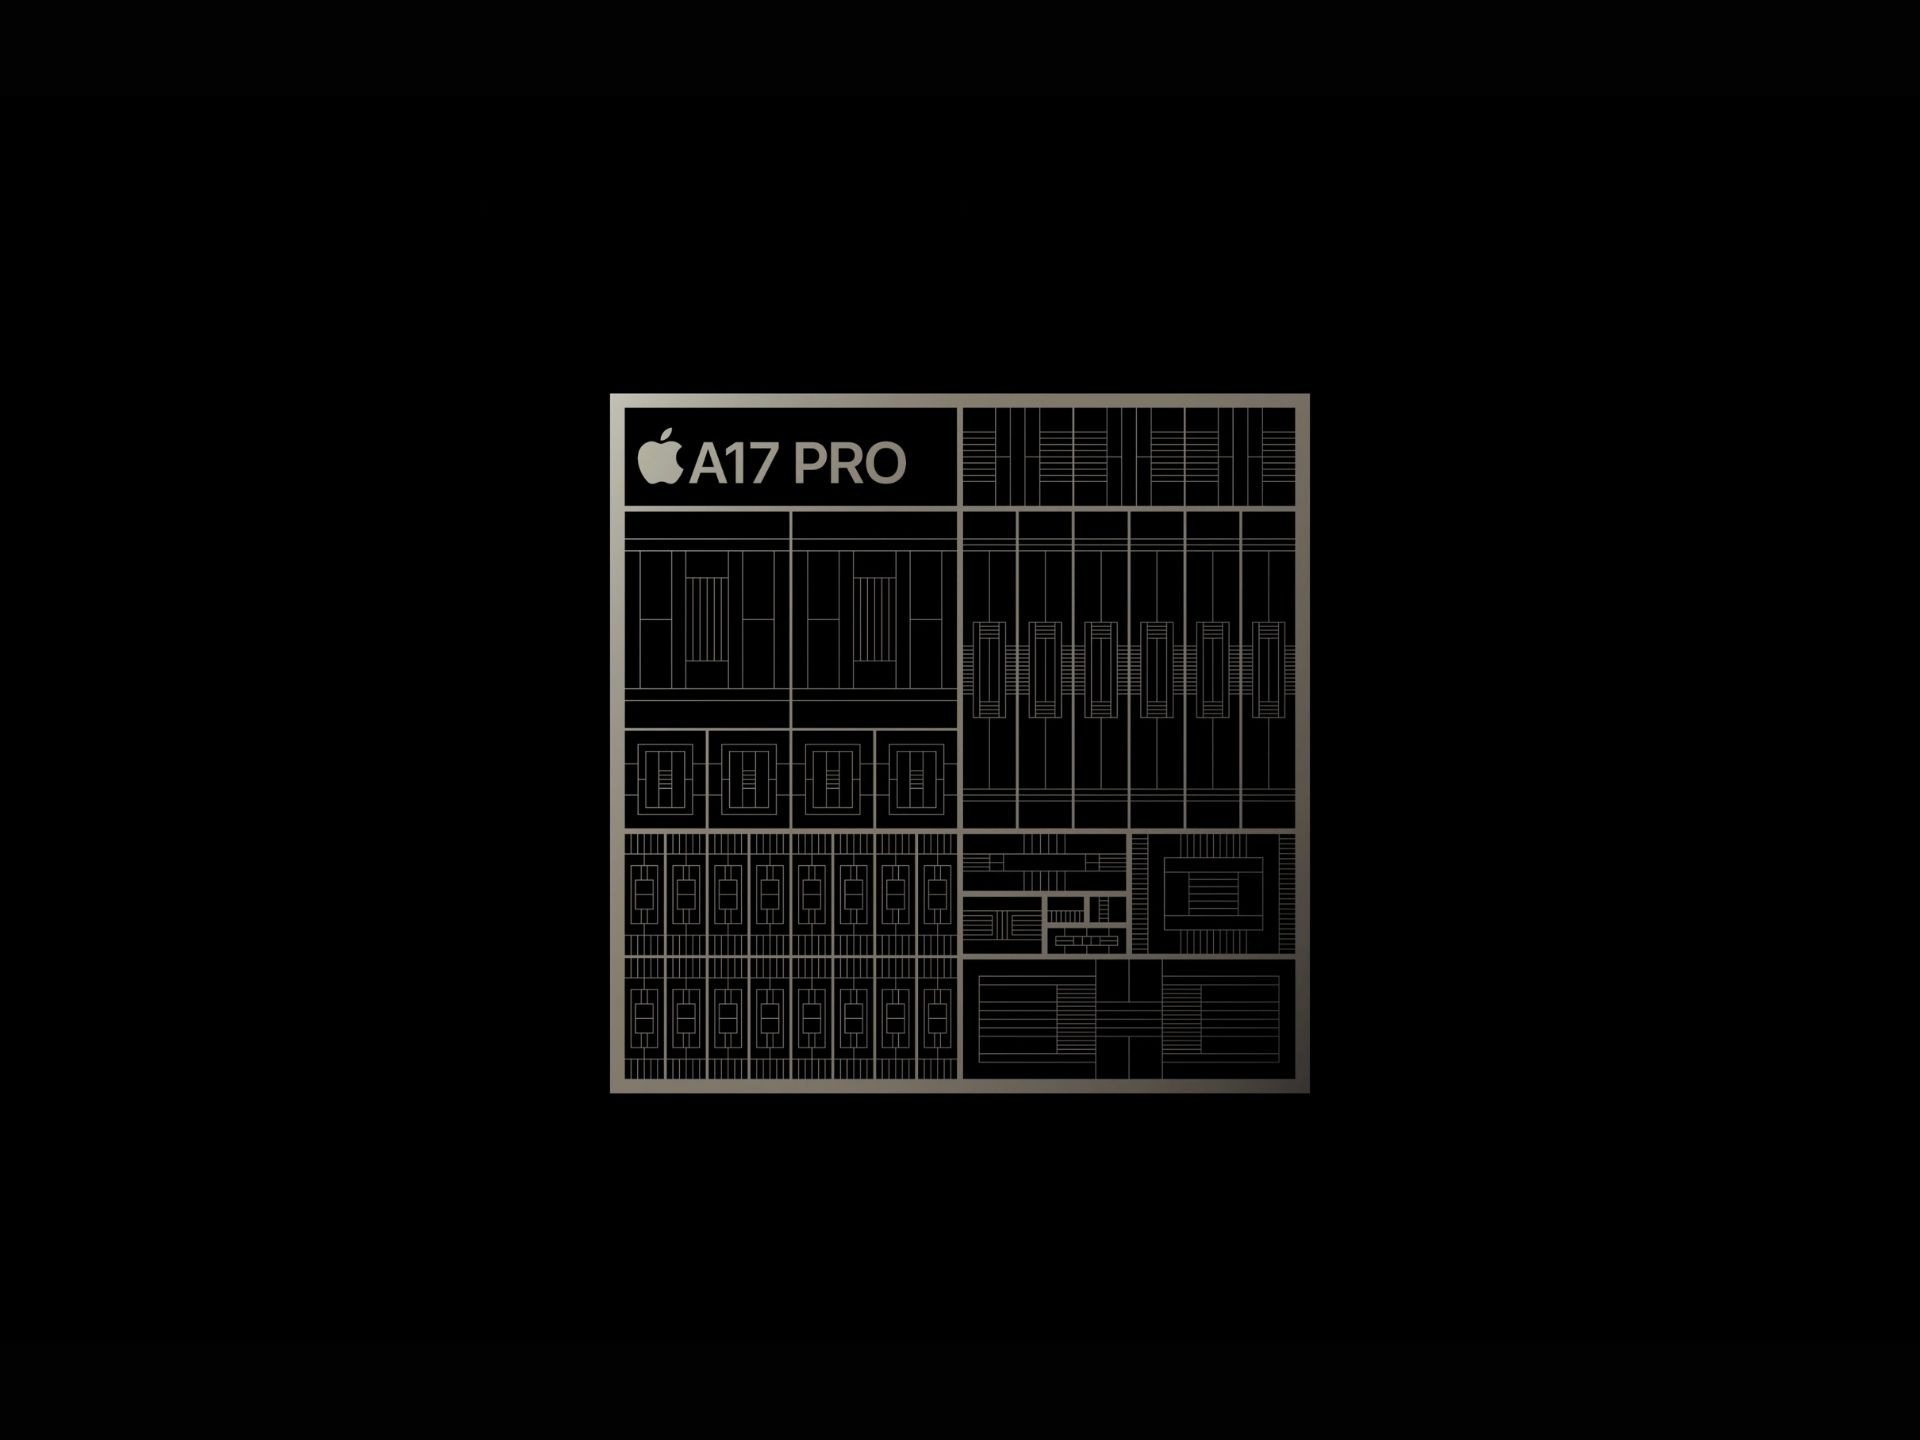 A17 Pro Processor Graphic